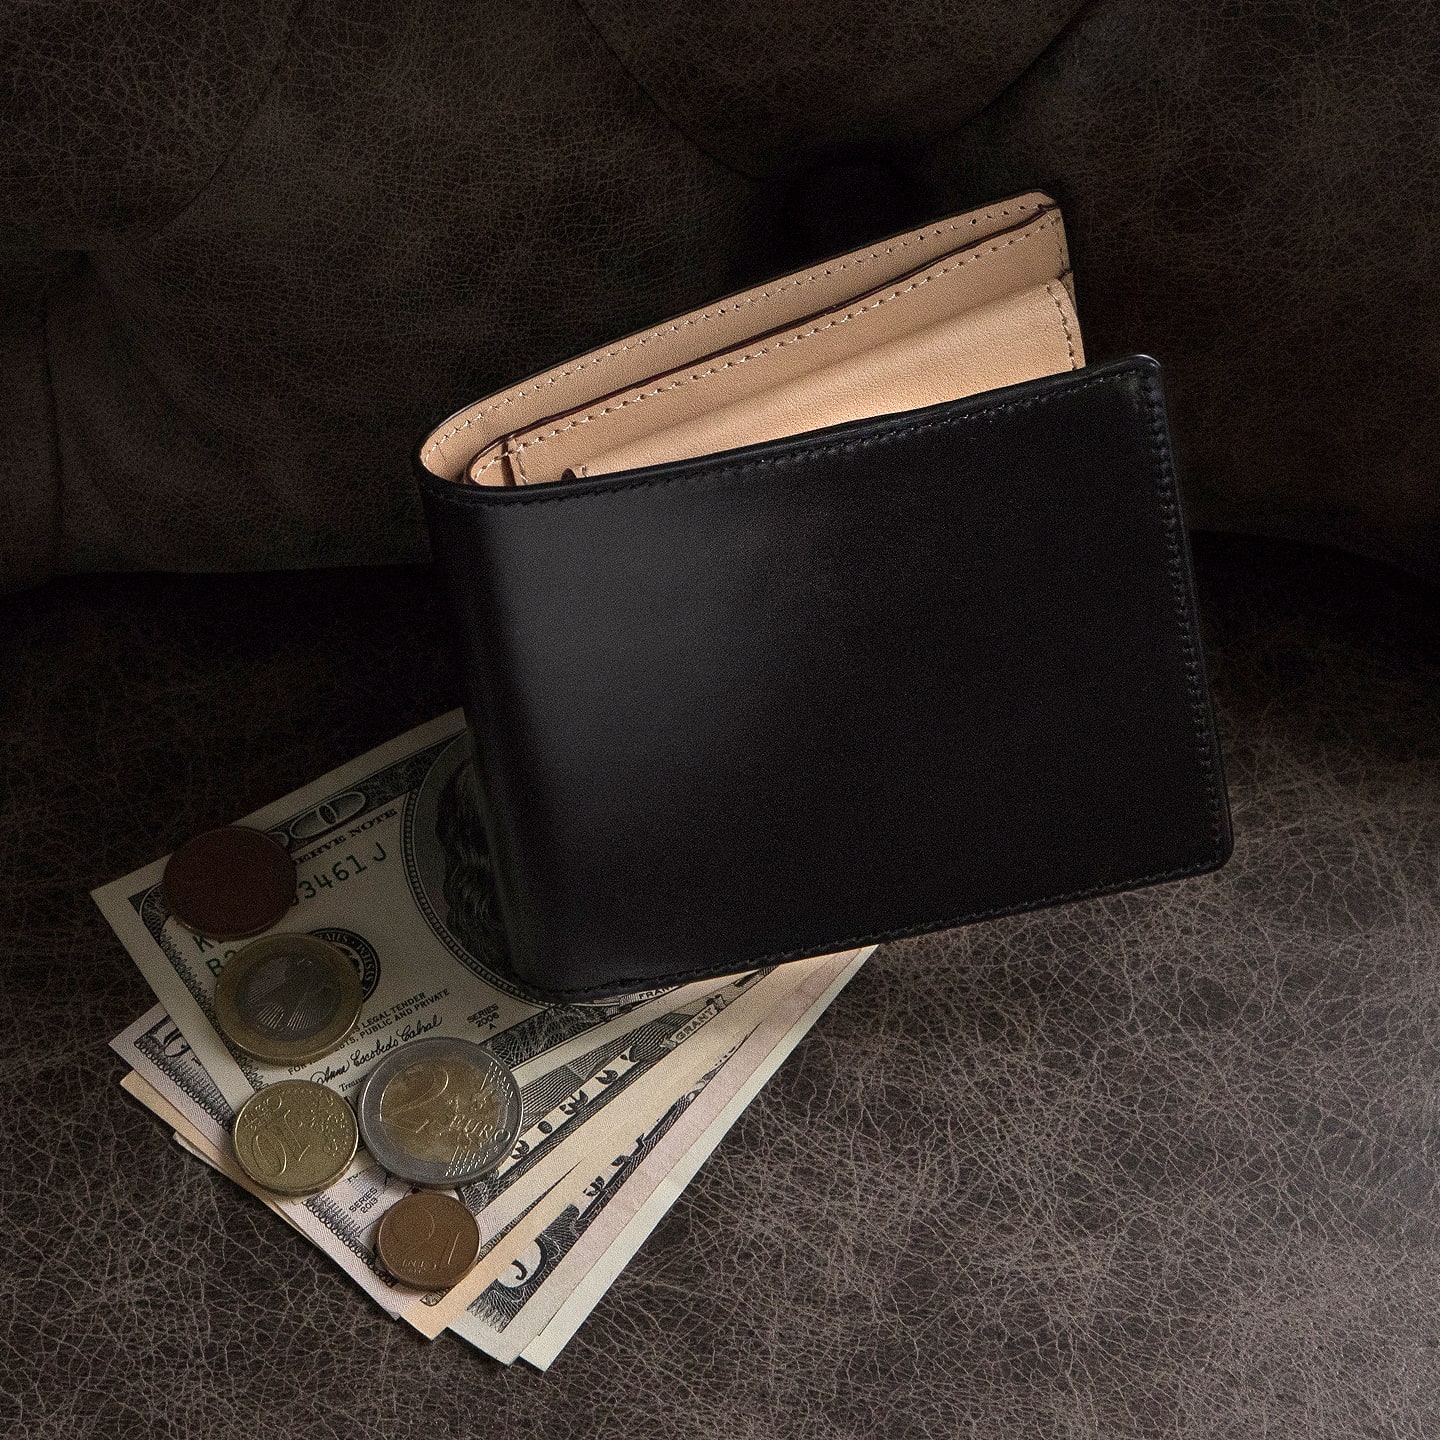 アニリン染めコードバン 二つ折り財布（小銭入れ付き） | メンズの財布 